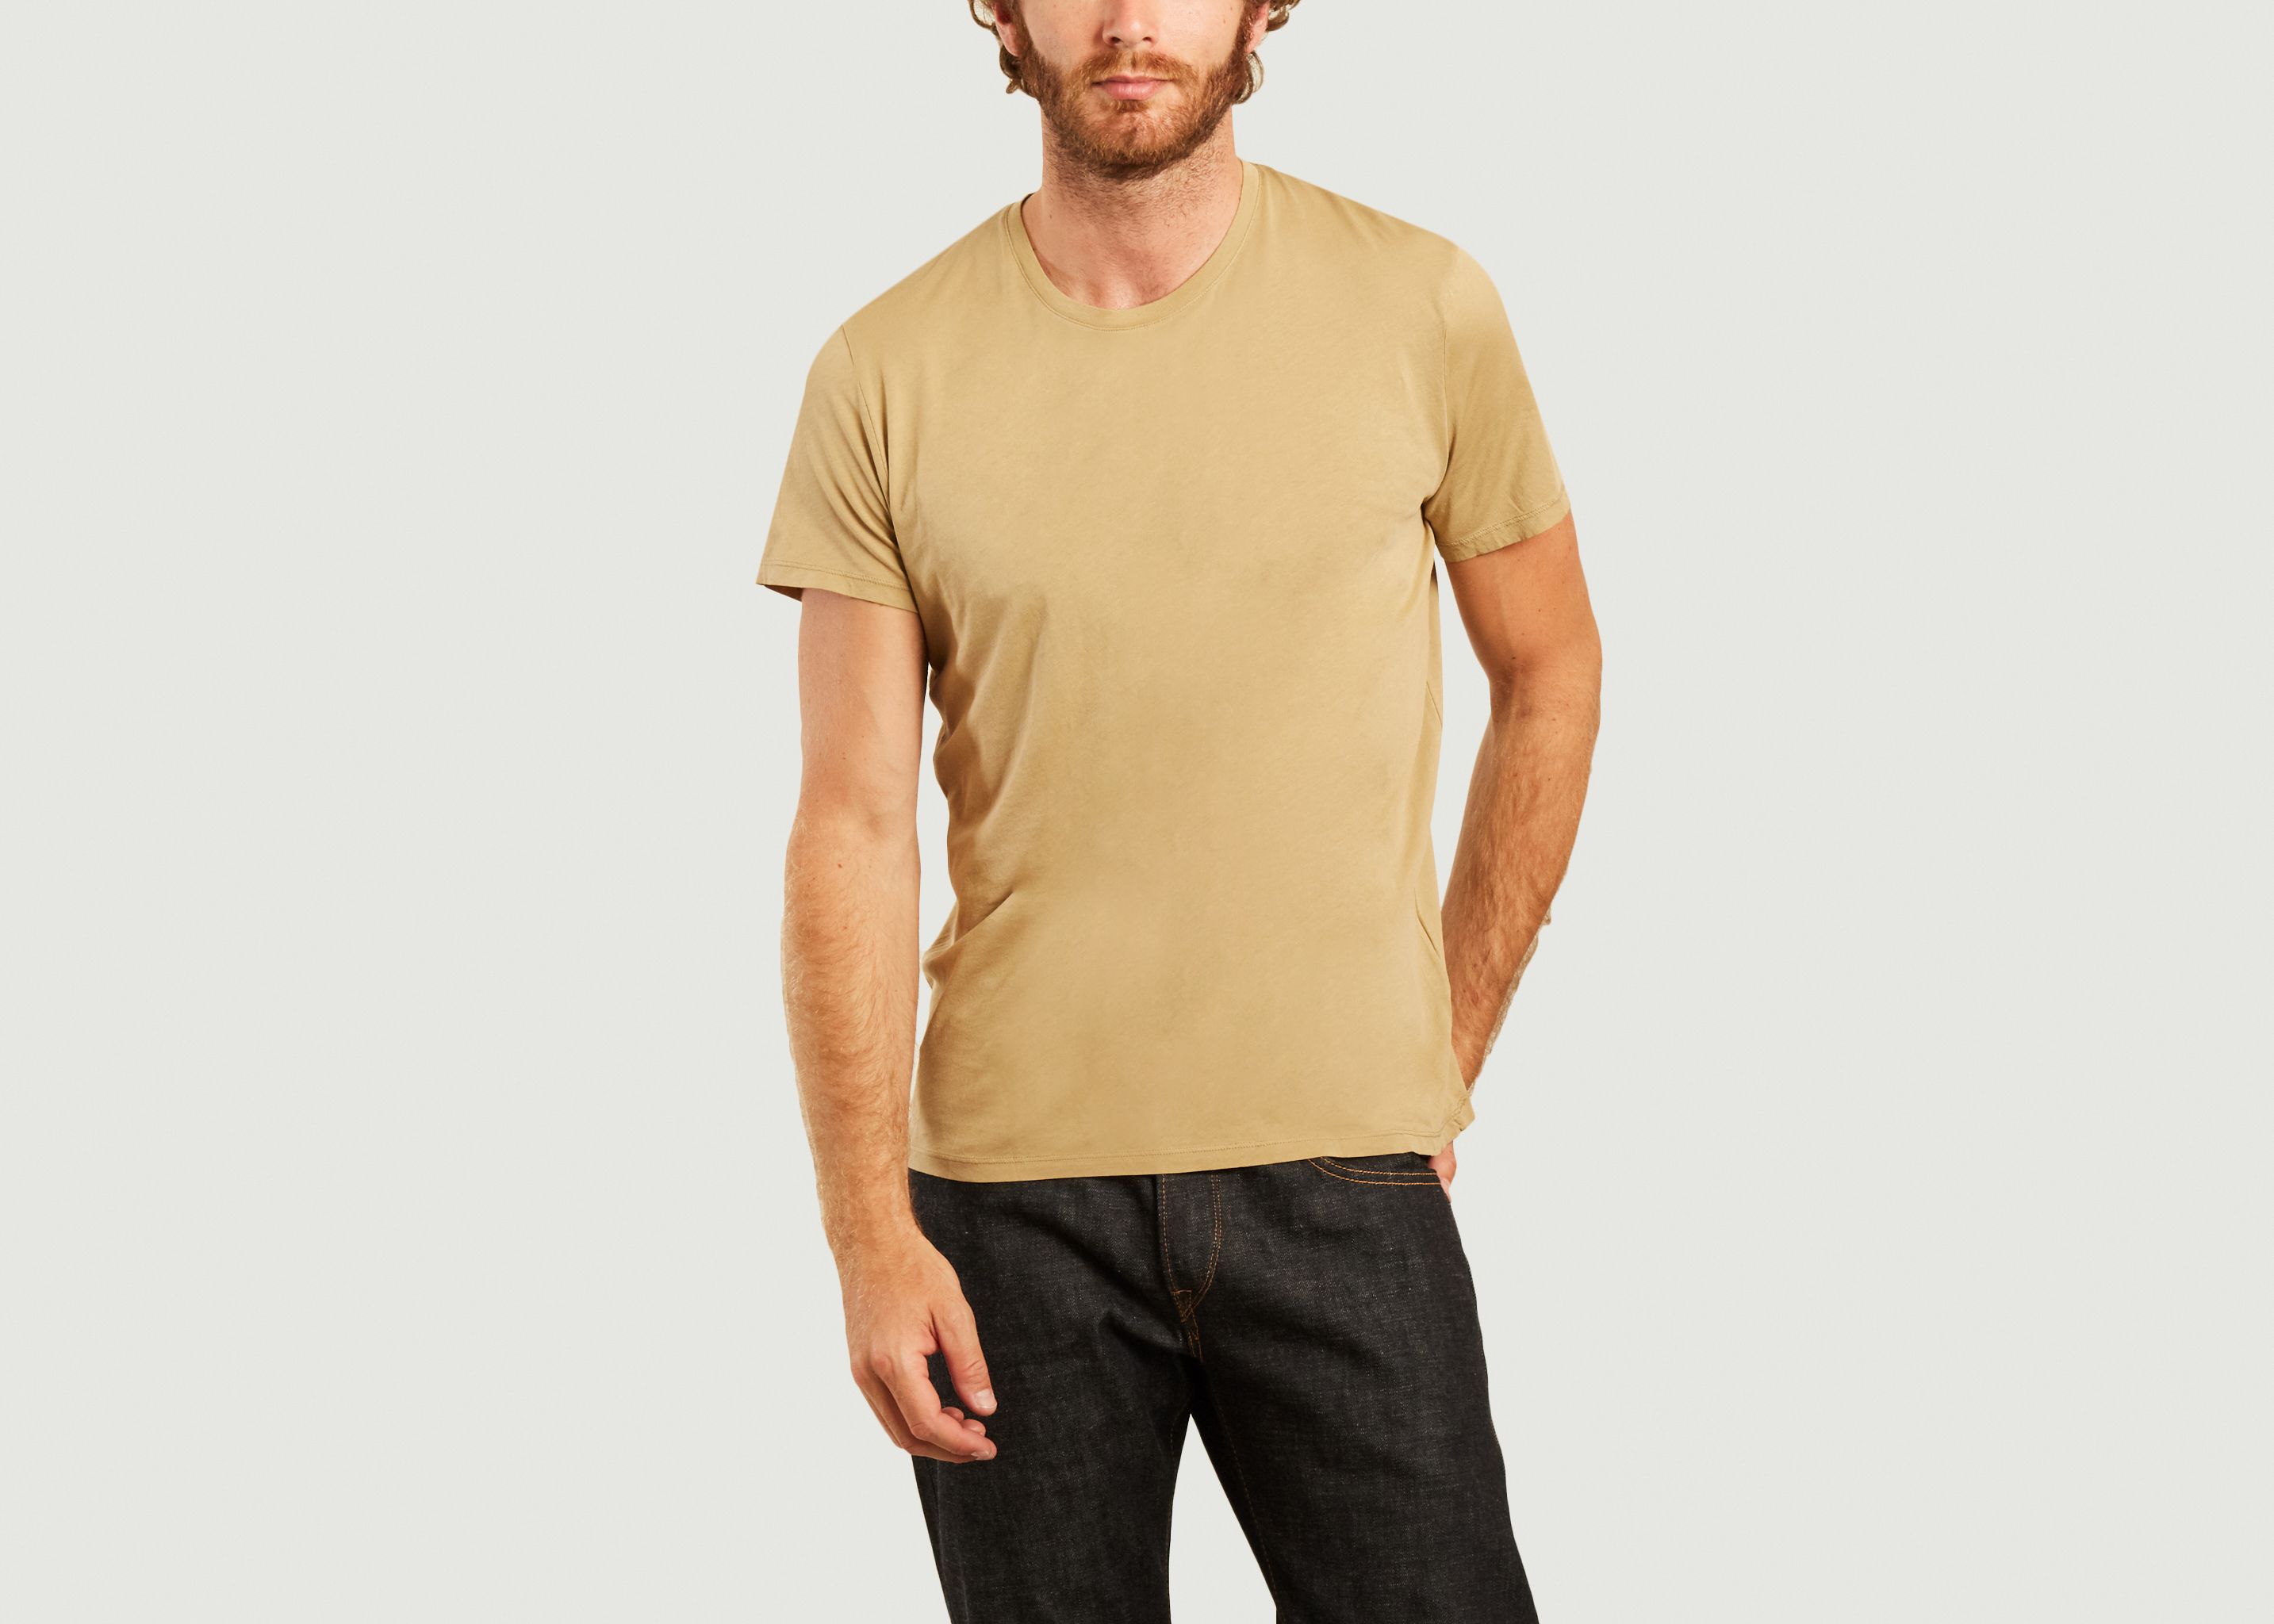 Decatur cotton t-shirt - American Vintage